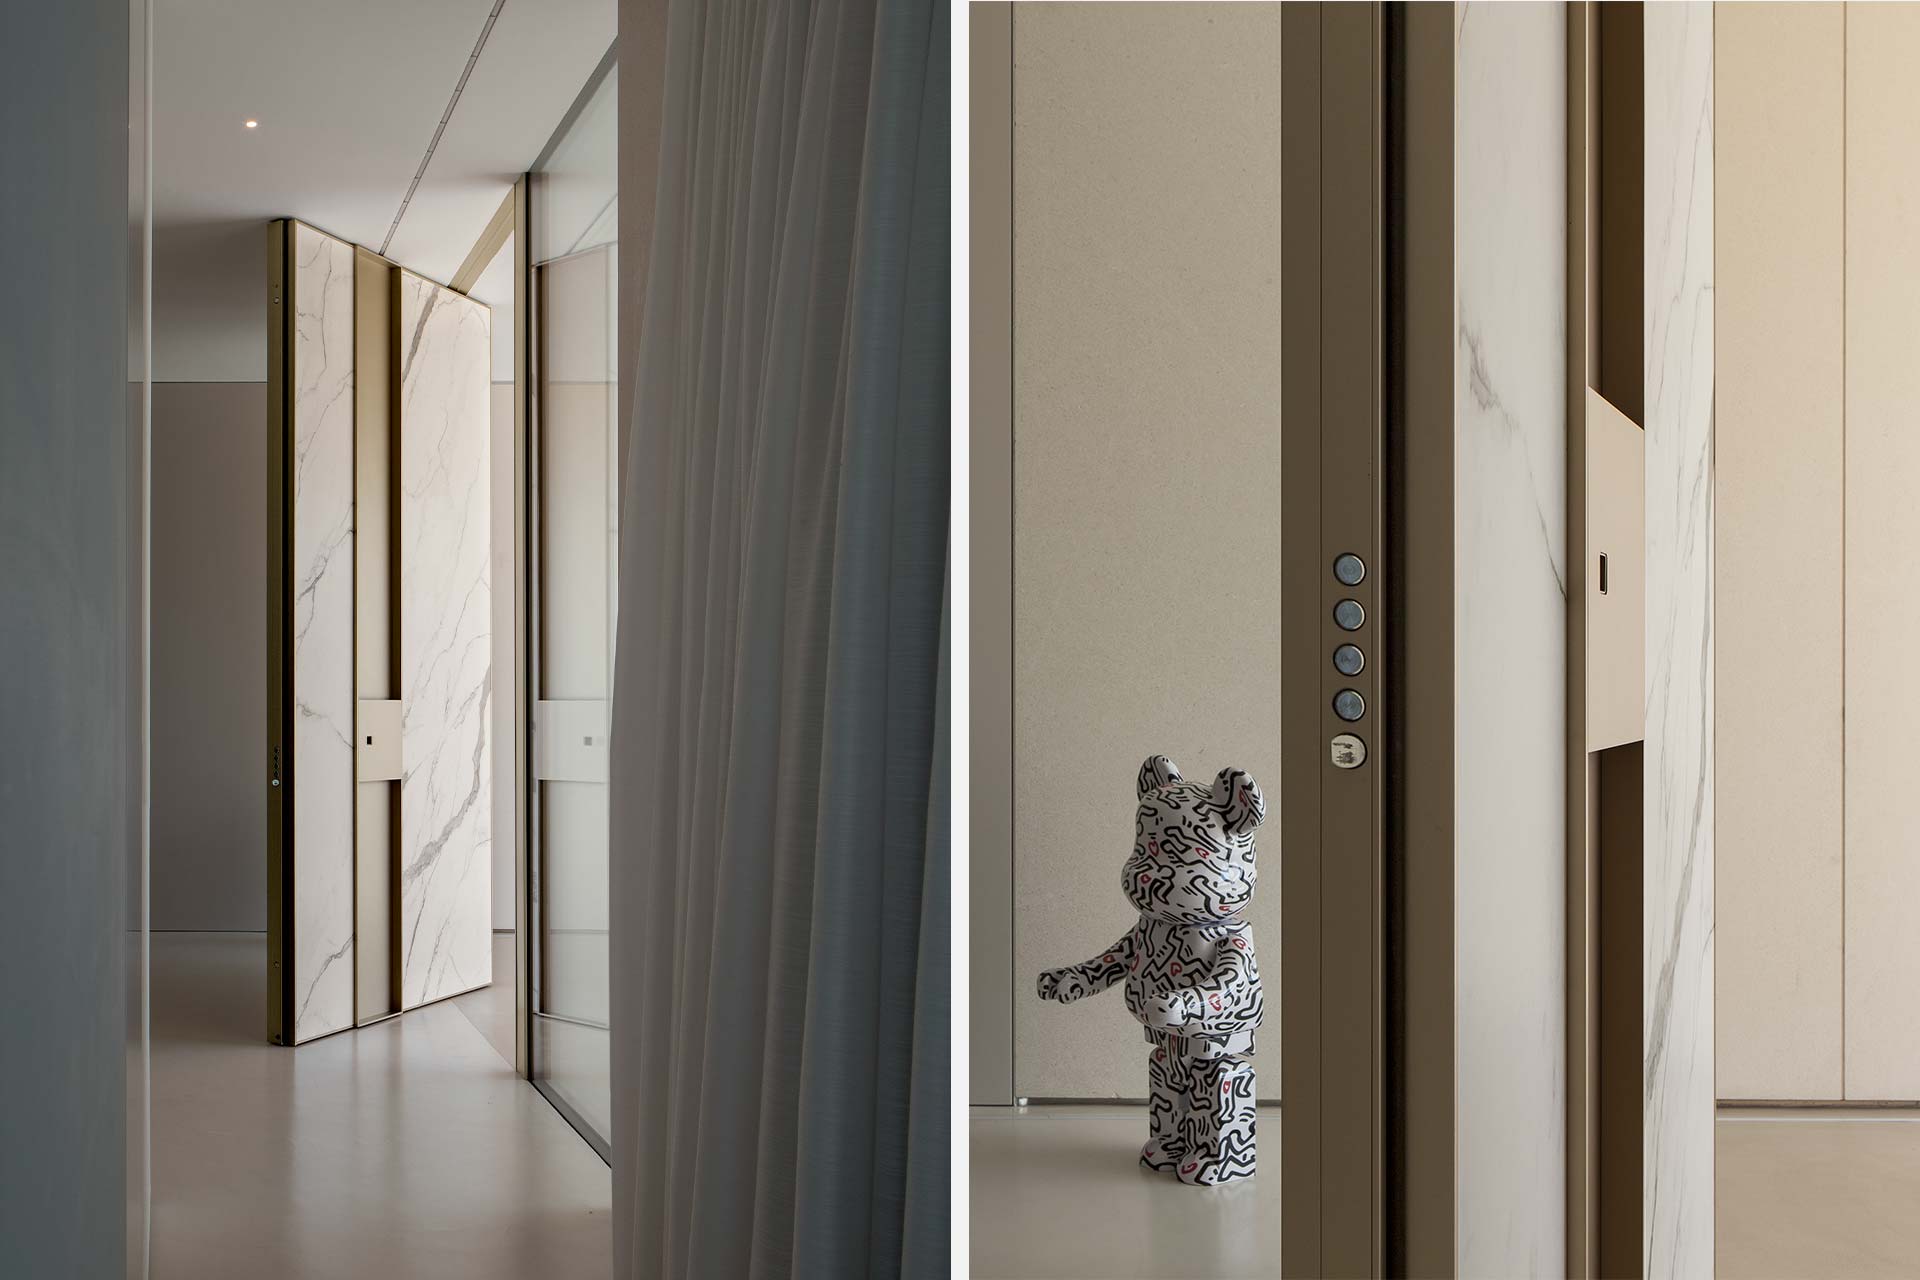 Progetto di design contemporaneo con porta d’Ingresso blindata a bilico ad Argenta – Villa privata - Oikos